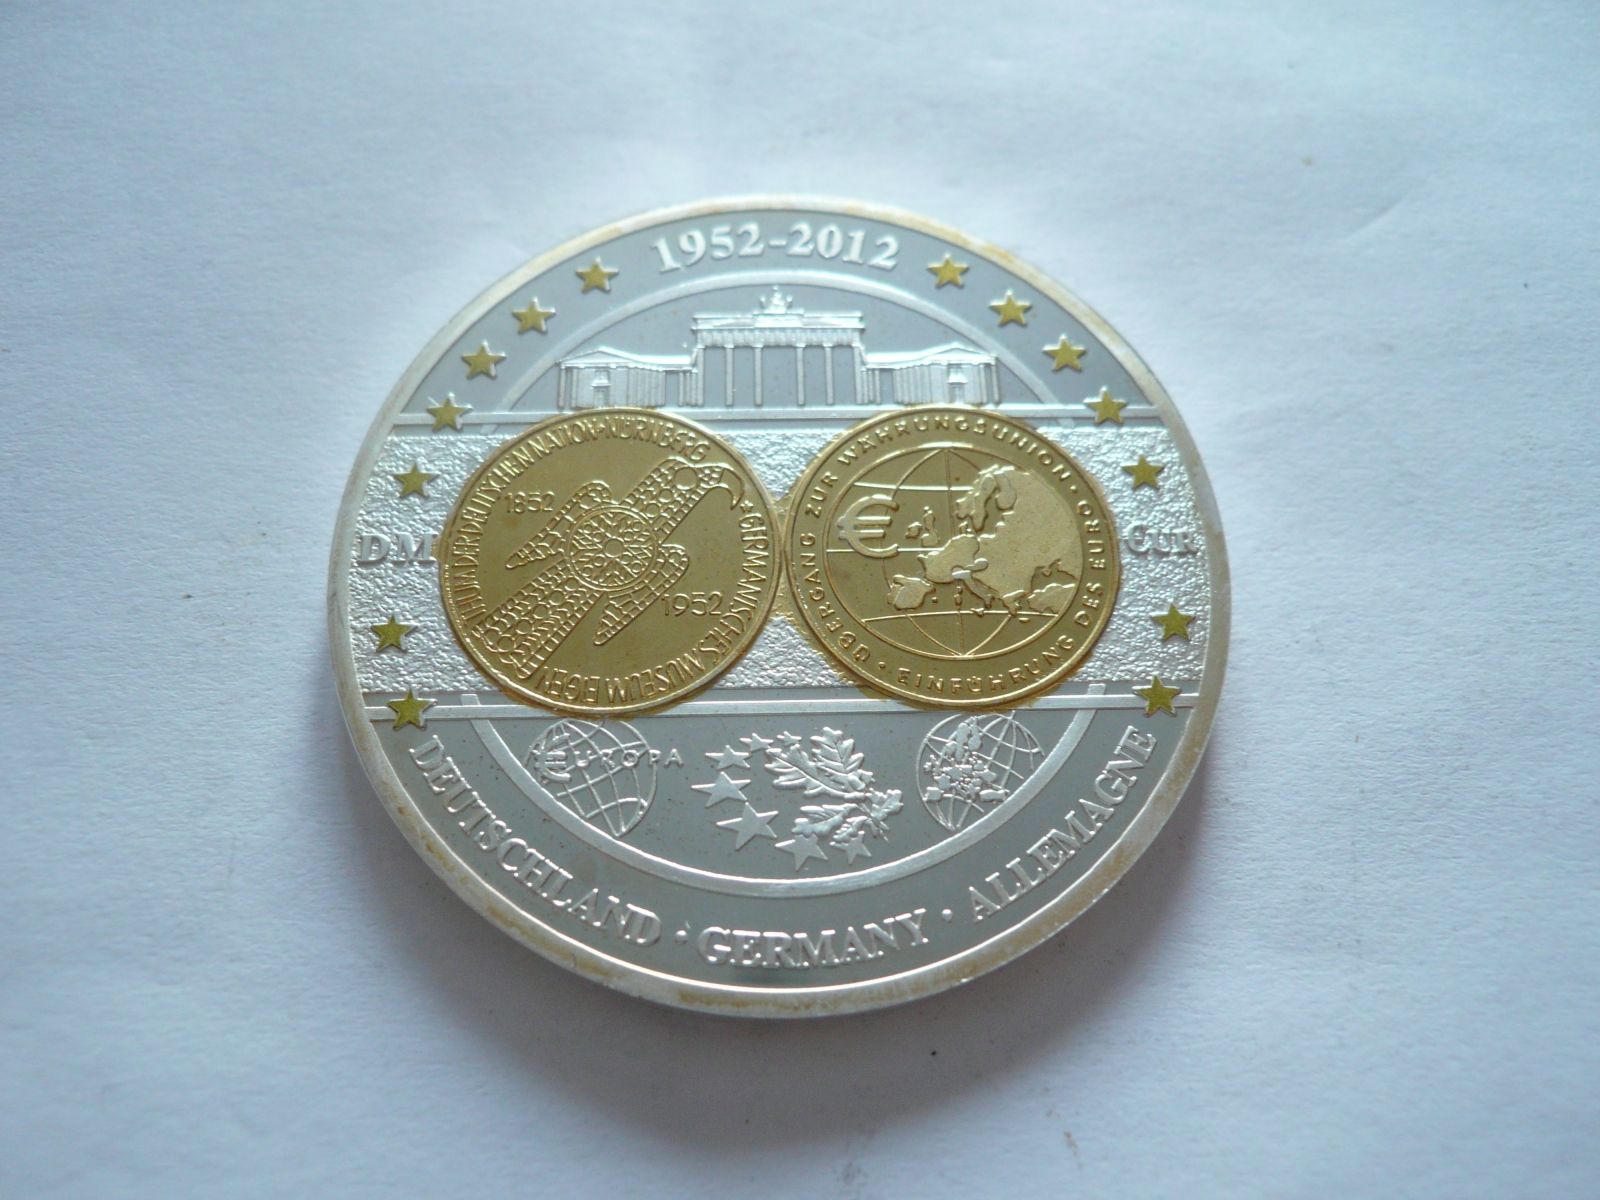 medaile na sjednocení Evropy, Německo